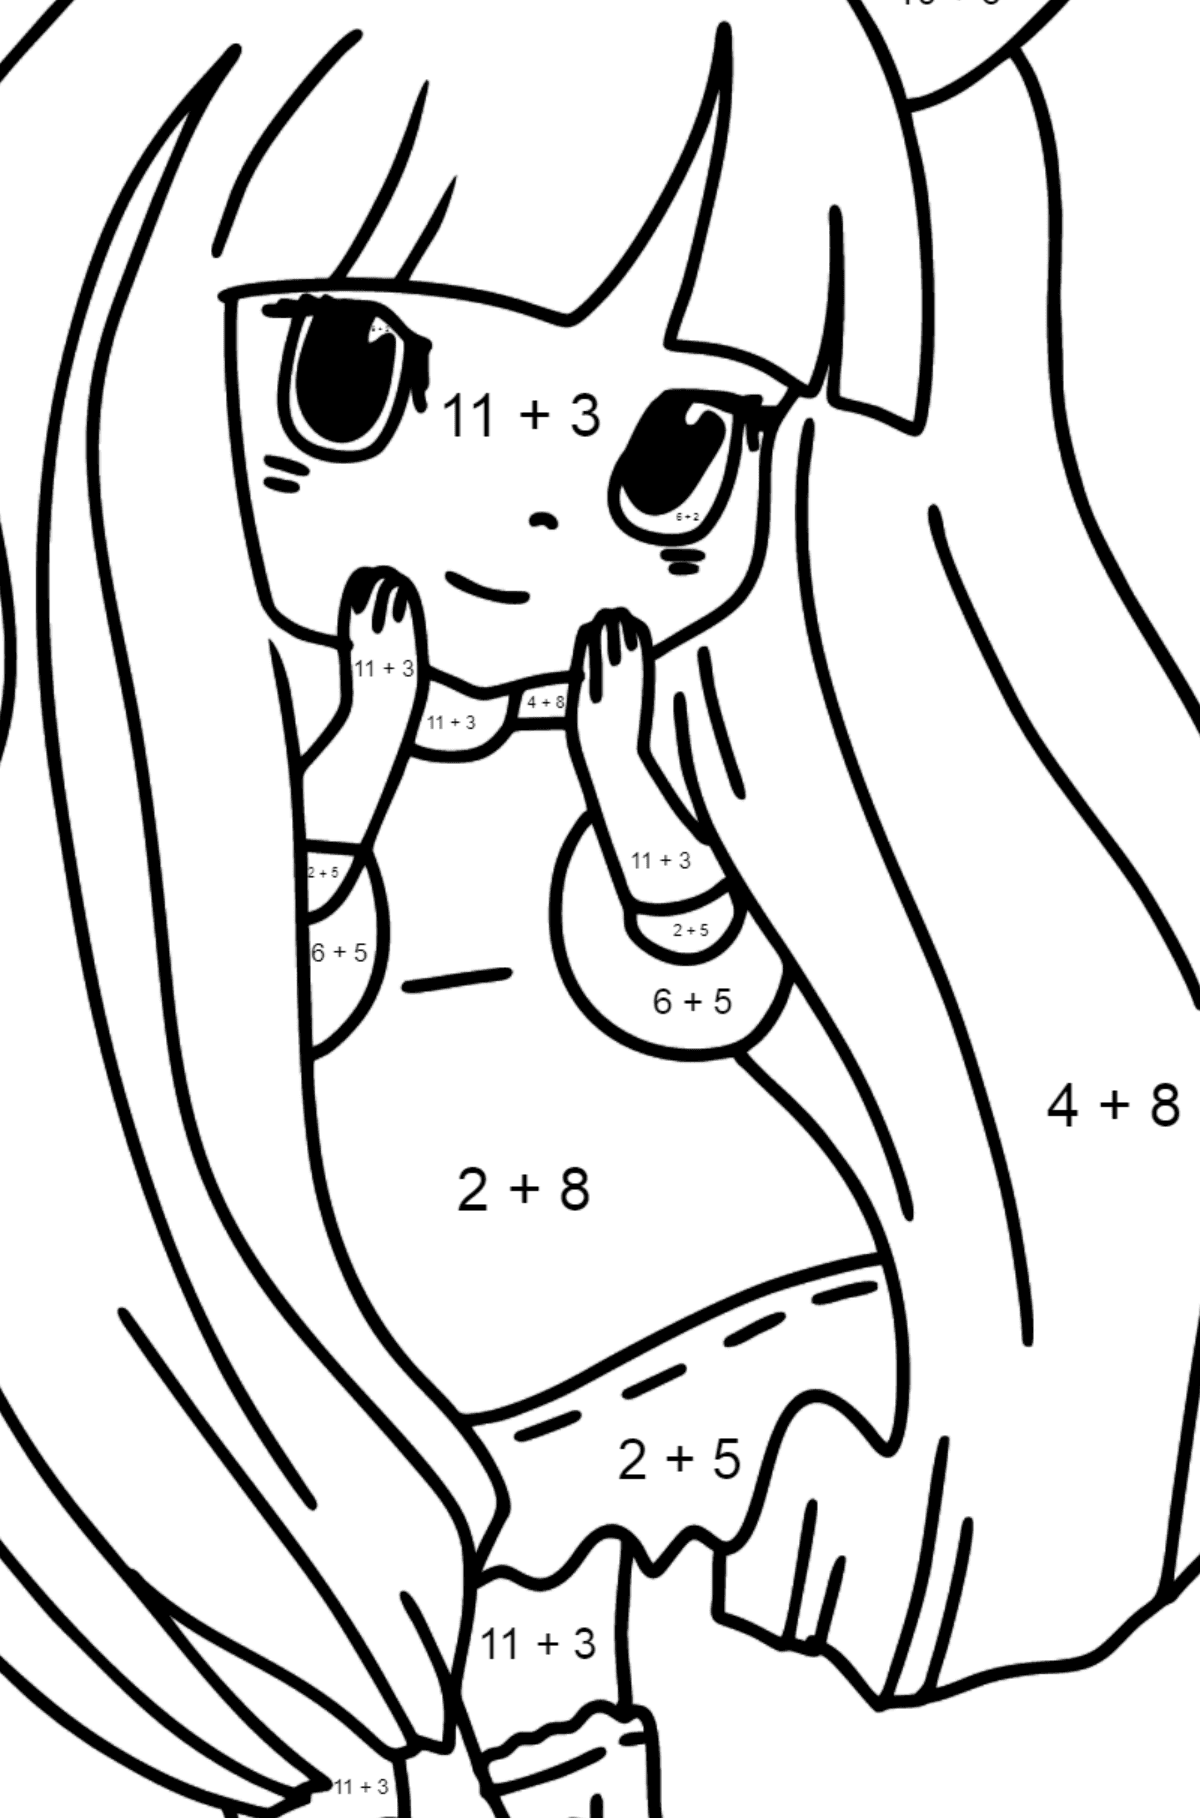 Kolorowanka Anime - Królik dziewczyna - Kolorowanki matematyczne dodawanie dla dzieci